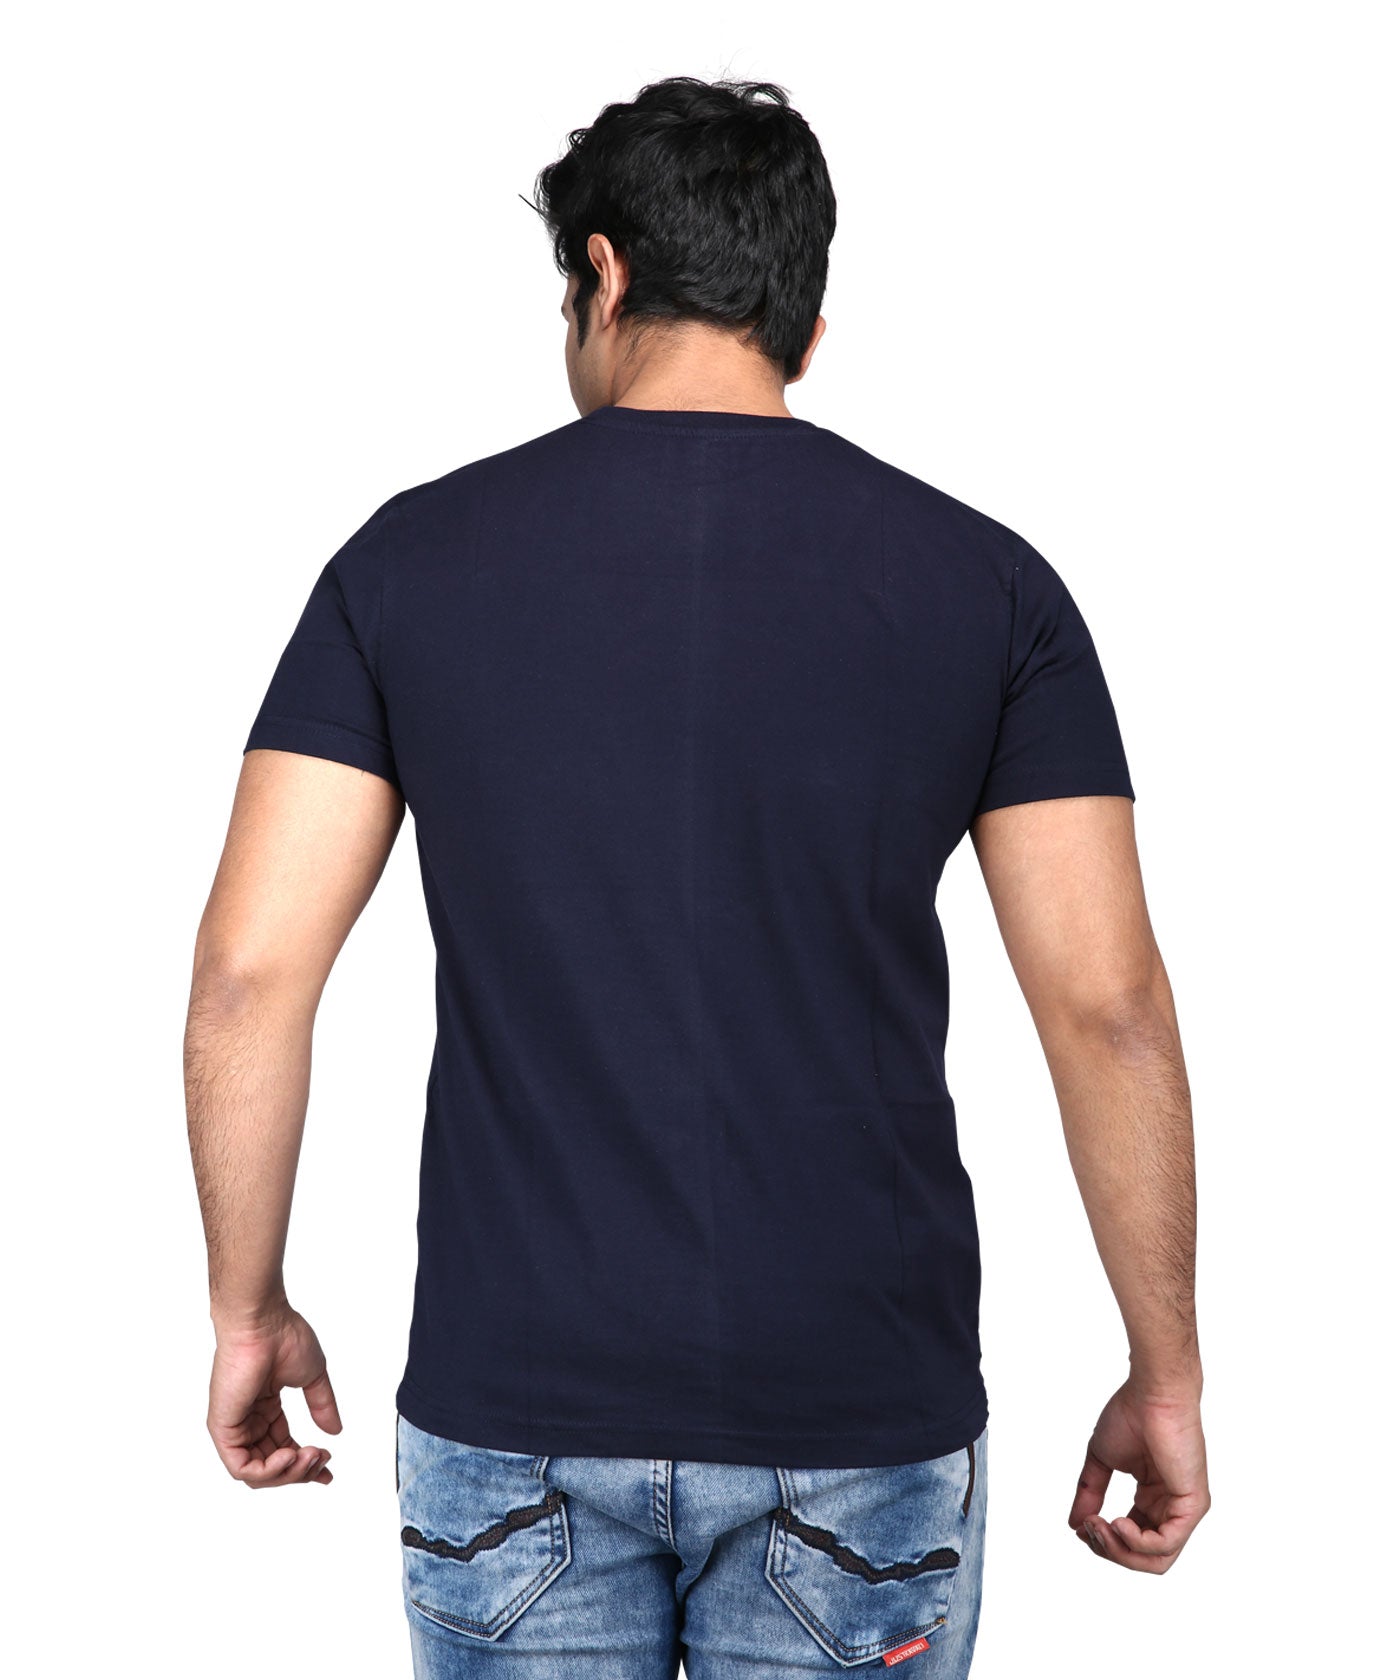 India Tri Colour - Premium Round Neck Cotton Tees for Men - Navy Blue